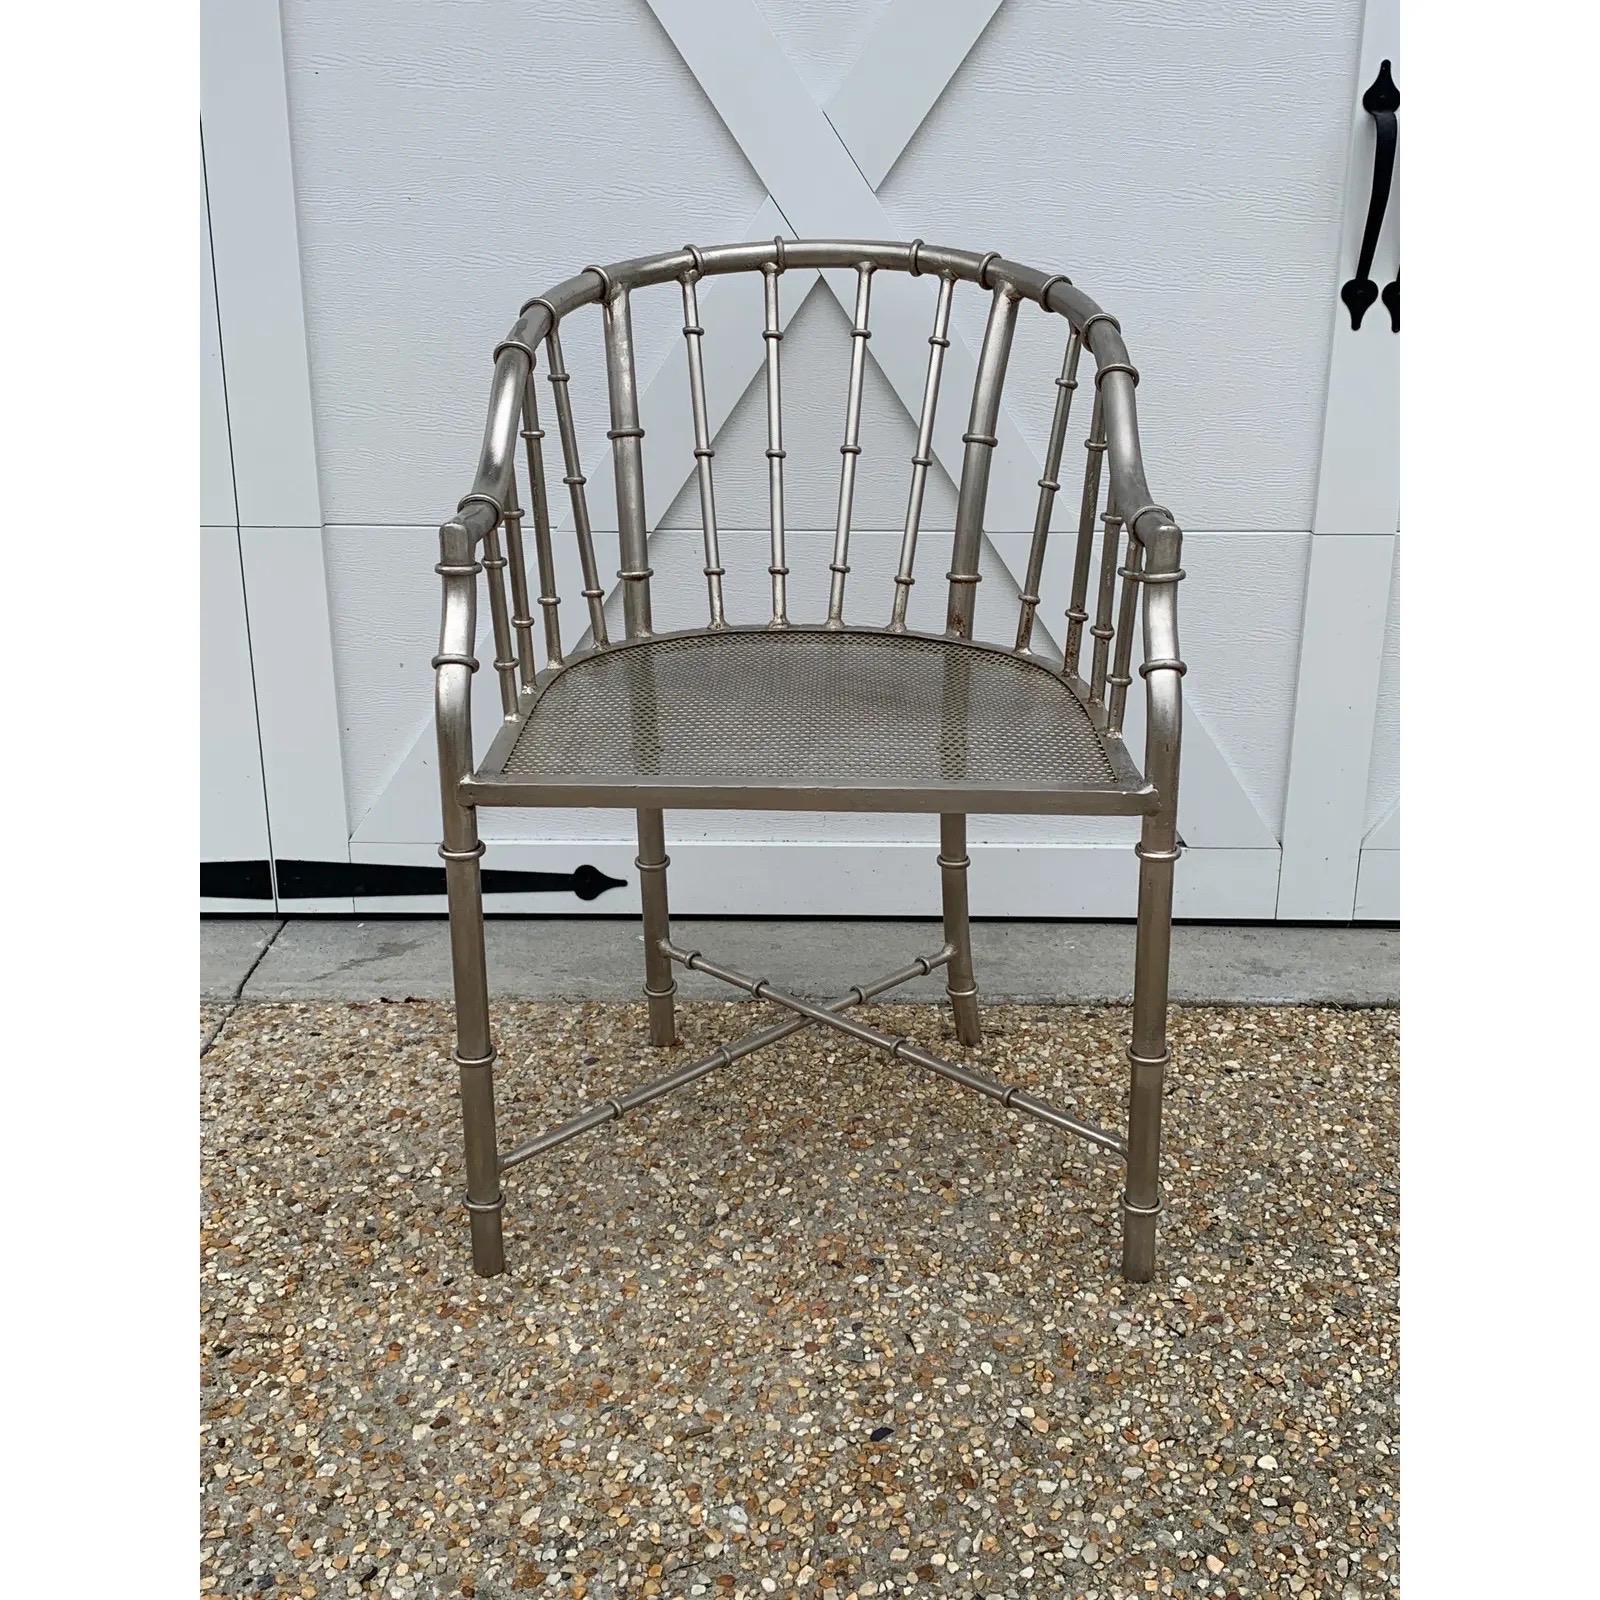 Gelistet ist ein atemberaubendes Paar französischer Sessel aus Stahl und Bambusimitat aus den 1960er Jahren, die Jacques Adnet zugeschrieben werden. Die beiden sind von unglaublicher Qualität und Gewicht. Wir empfehlen, das Paar professionell